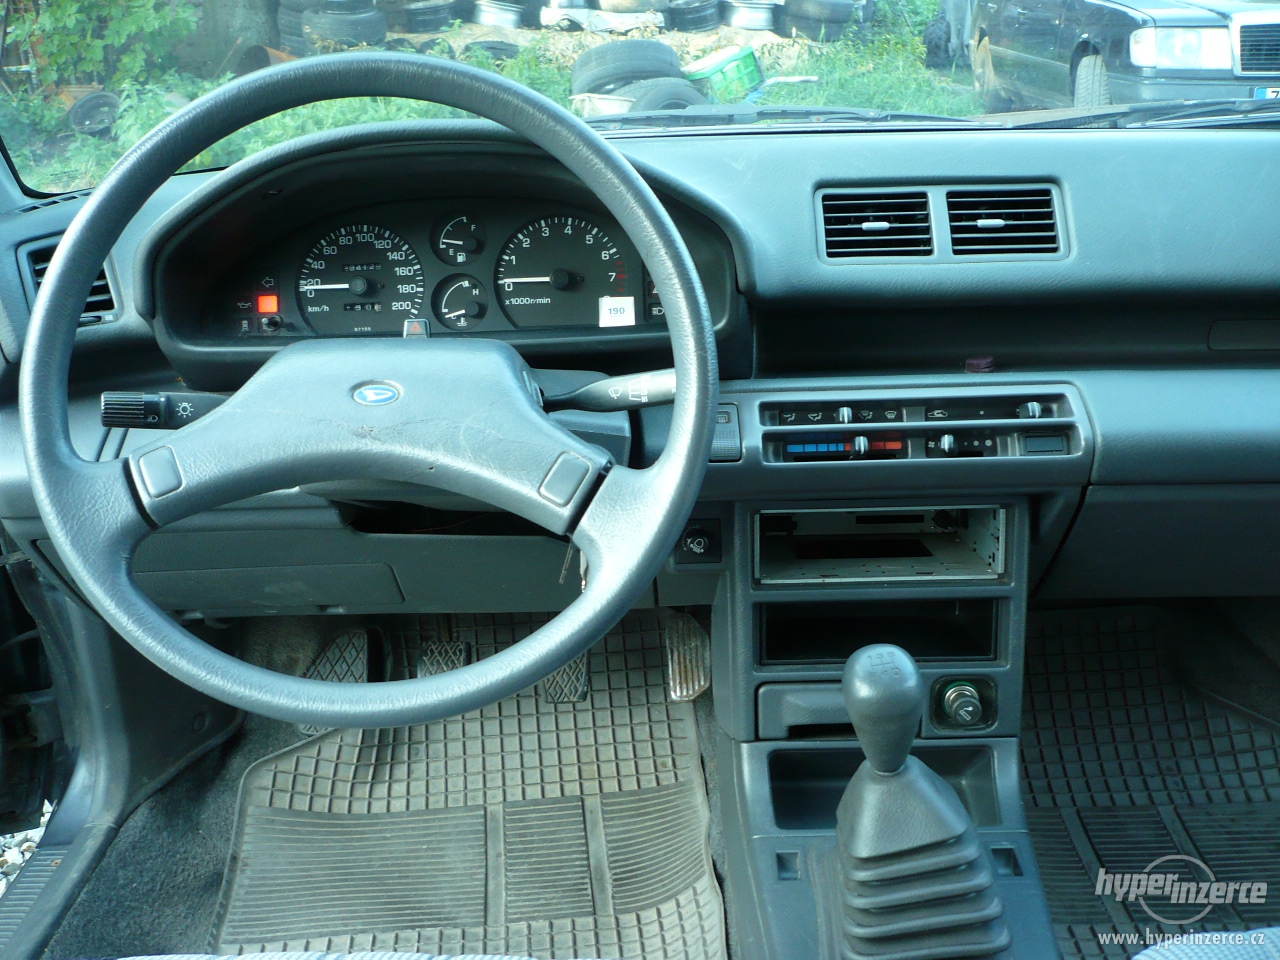 16v Daihatsu Applause 16 31594 - speedkar.